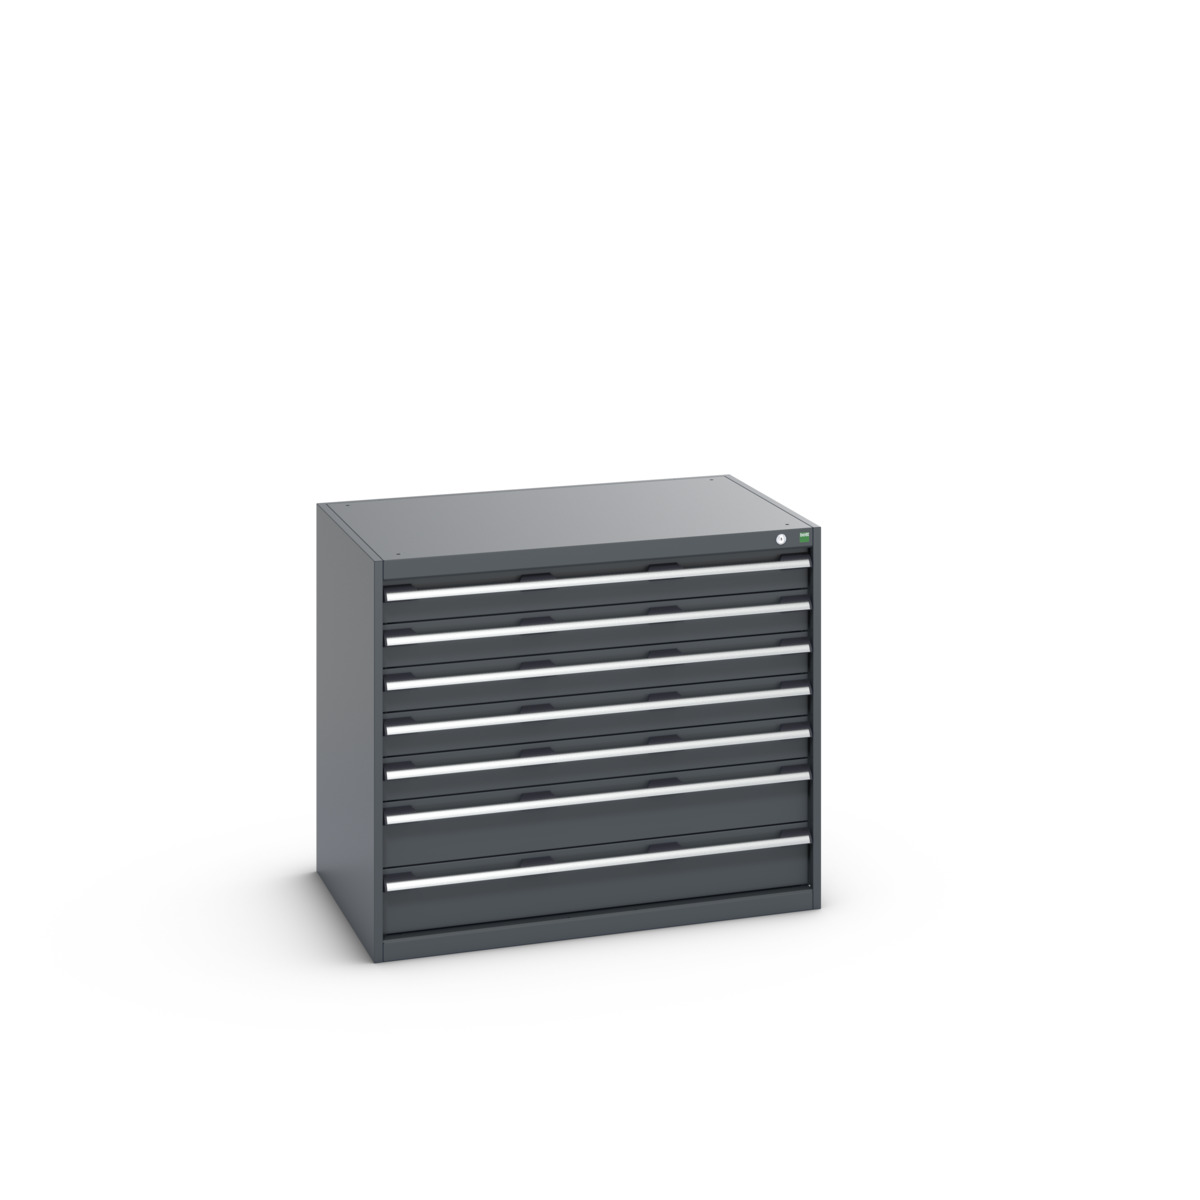 40029091.77V - cubio drawer cabinet